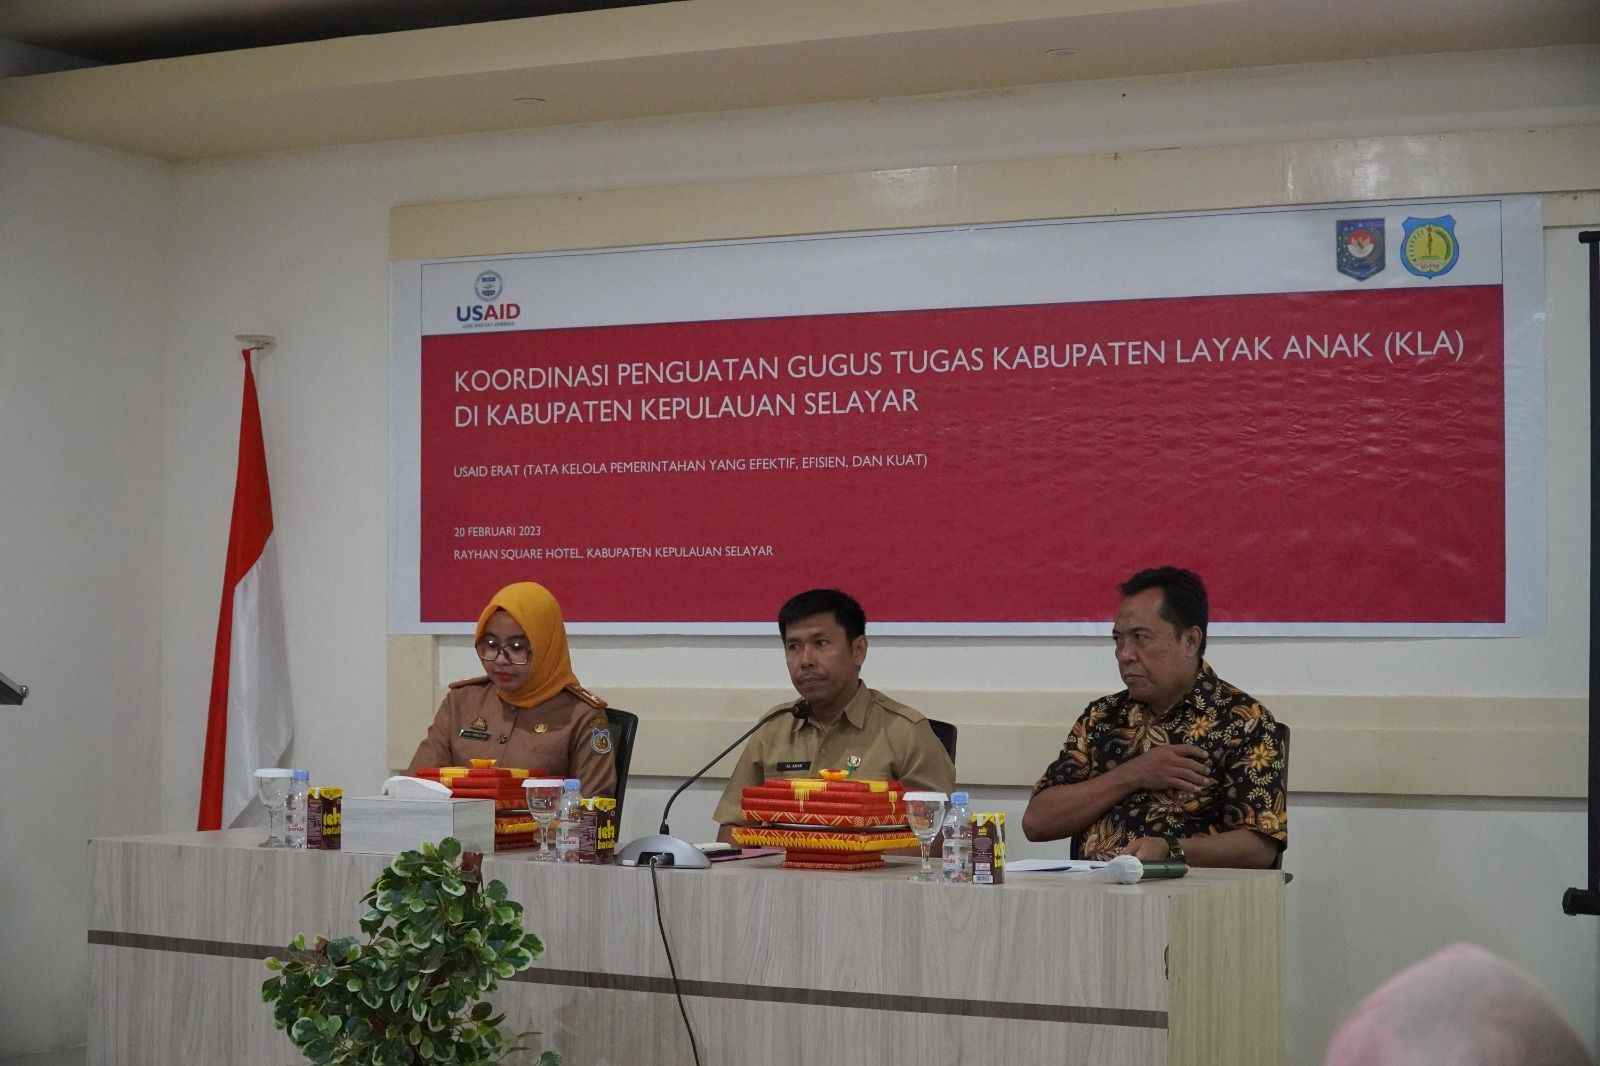 Kegiatan koordinasi penguatan Gugus Tugas Kabupaten Layak Anak (KLA) Kabupaten Kepulauan Selayar. (Dok/Pemkab Selayar).